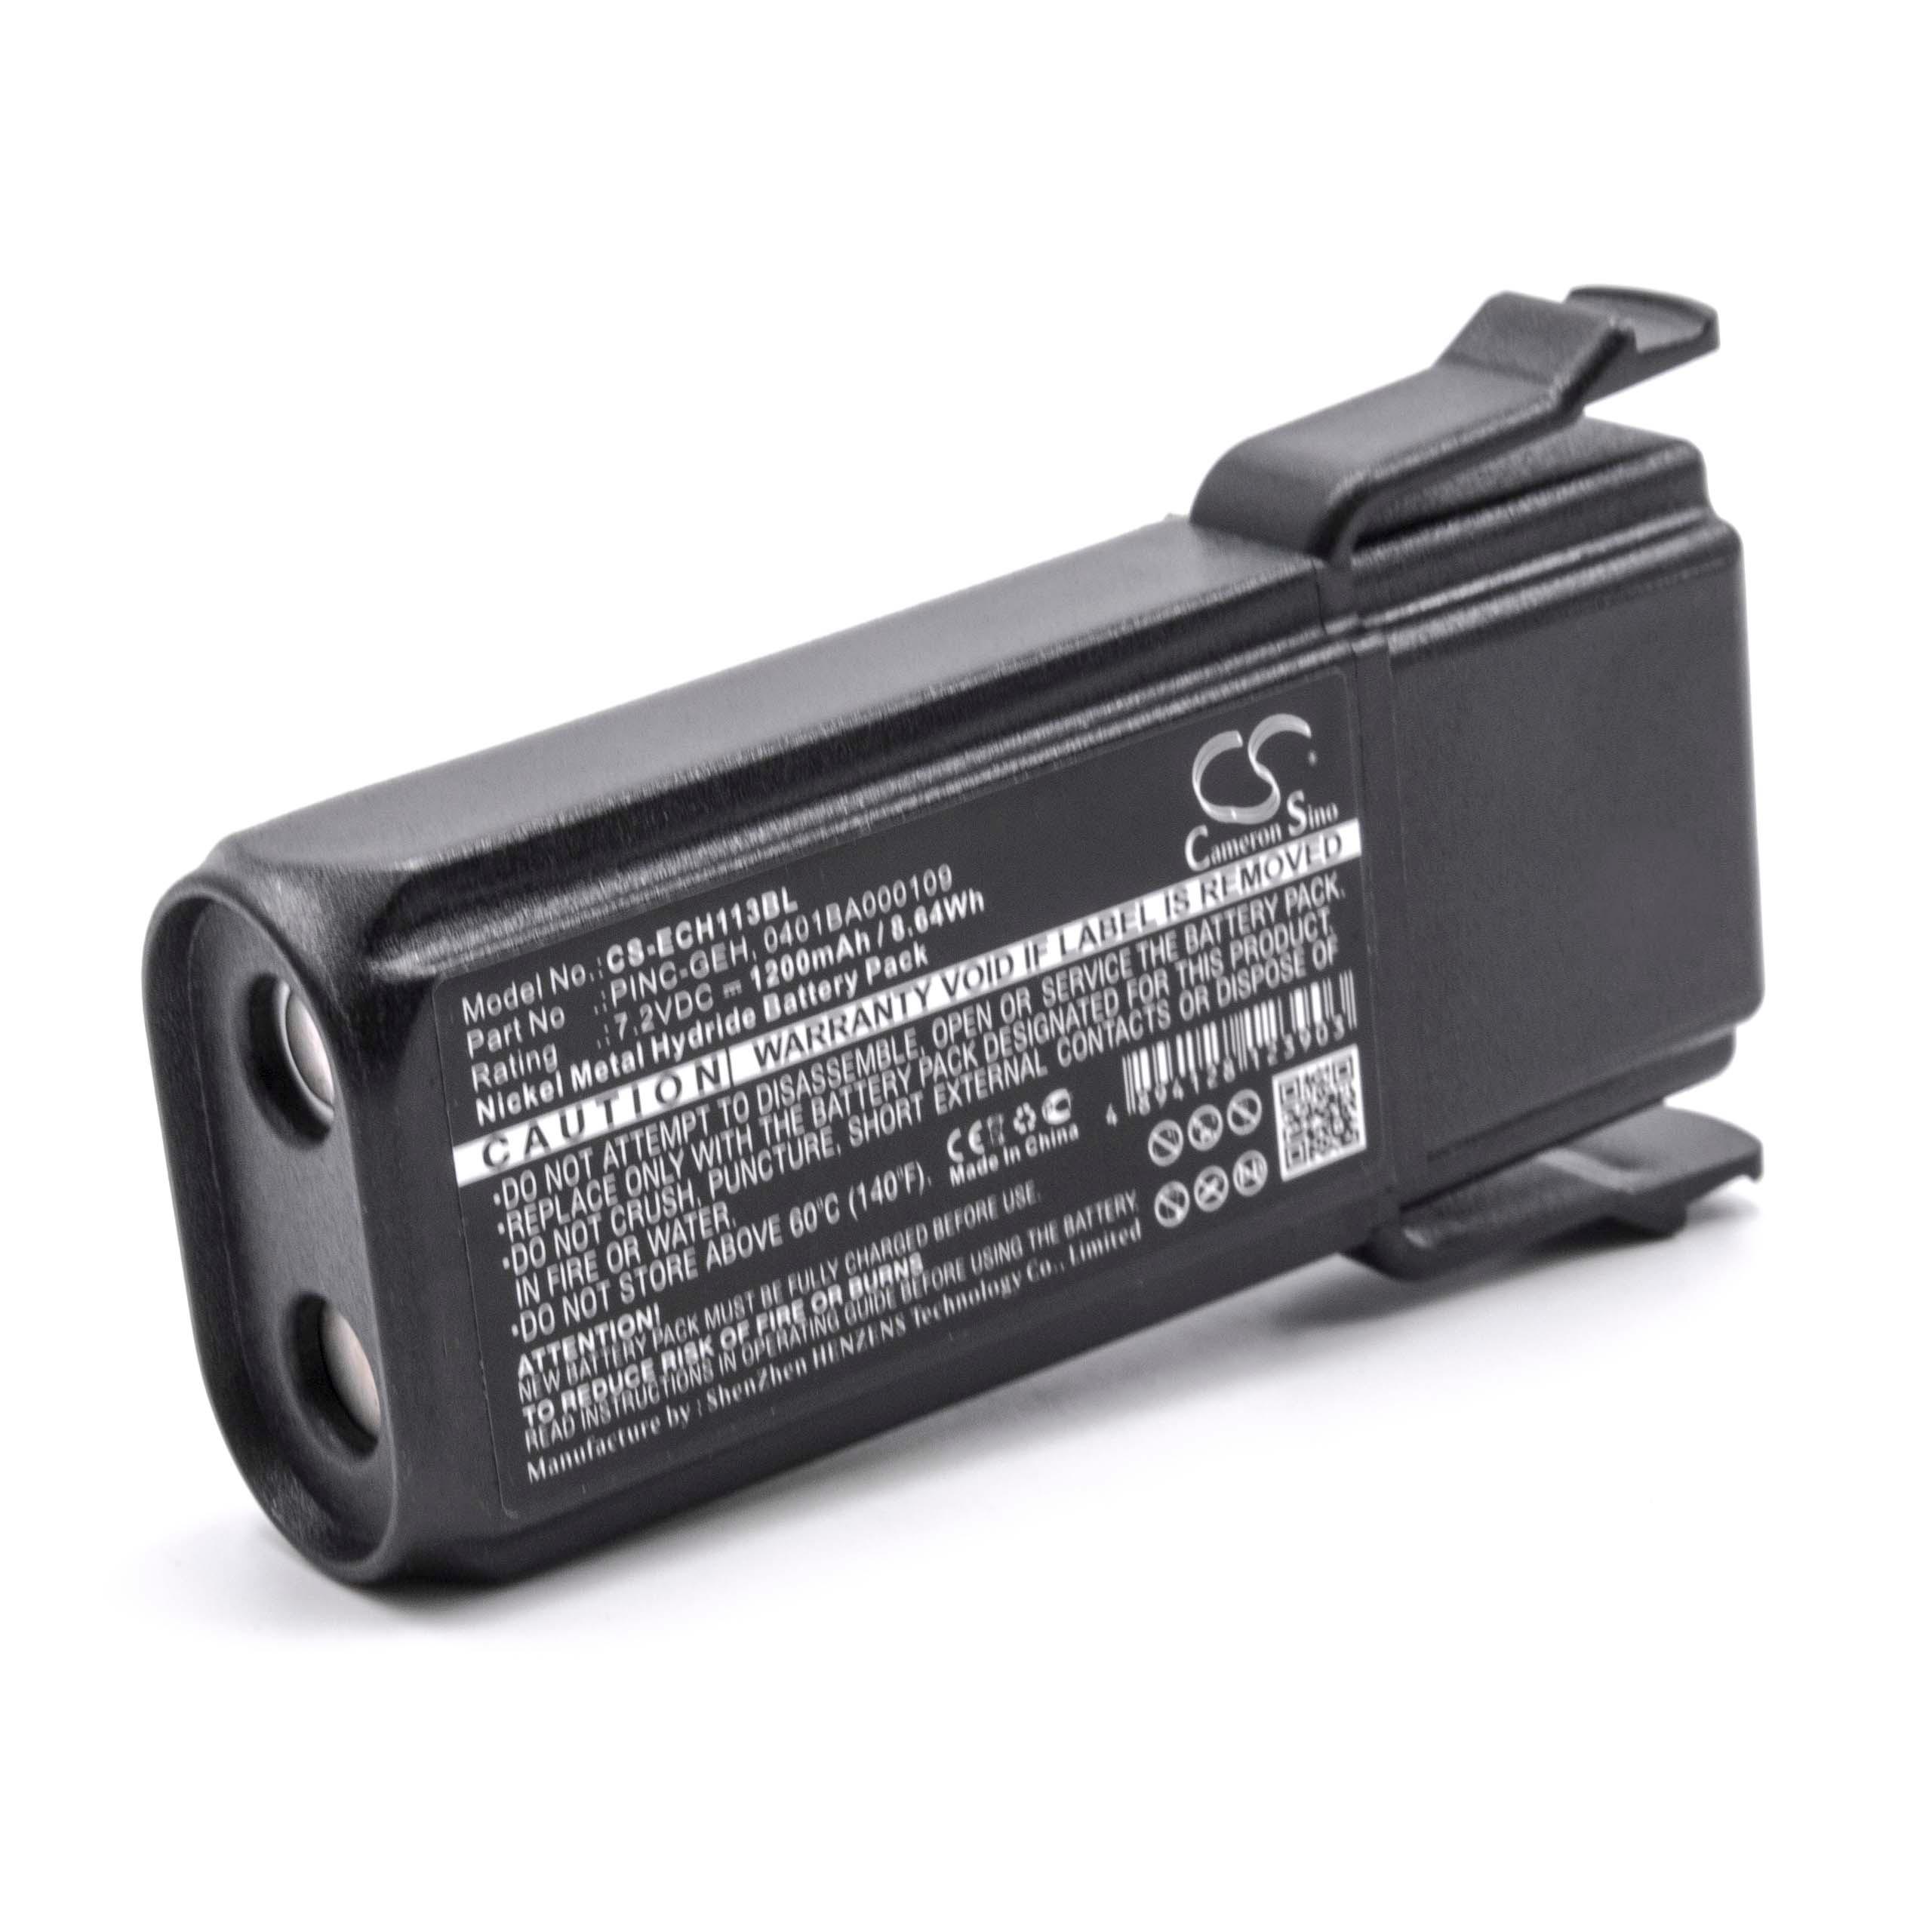 Batterie remplace Elca 0401BA000109, 0401BA000113, PINC-GEH, 04.142 pour télécommande - 1200mAh 7,2V NiMH